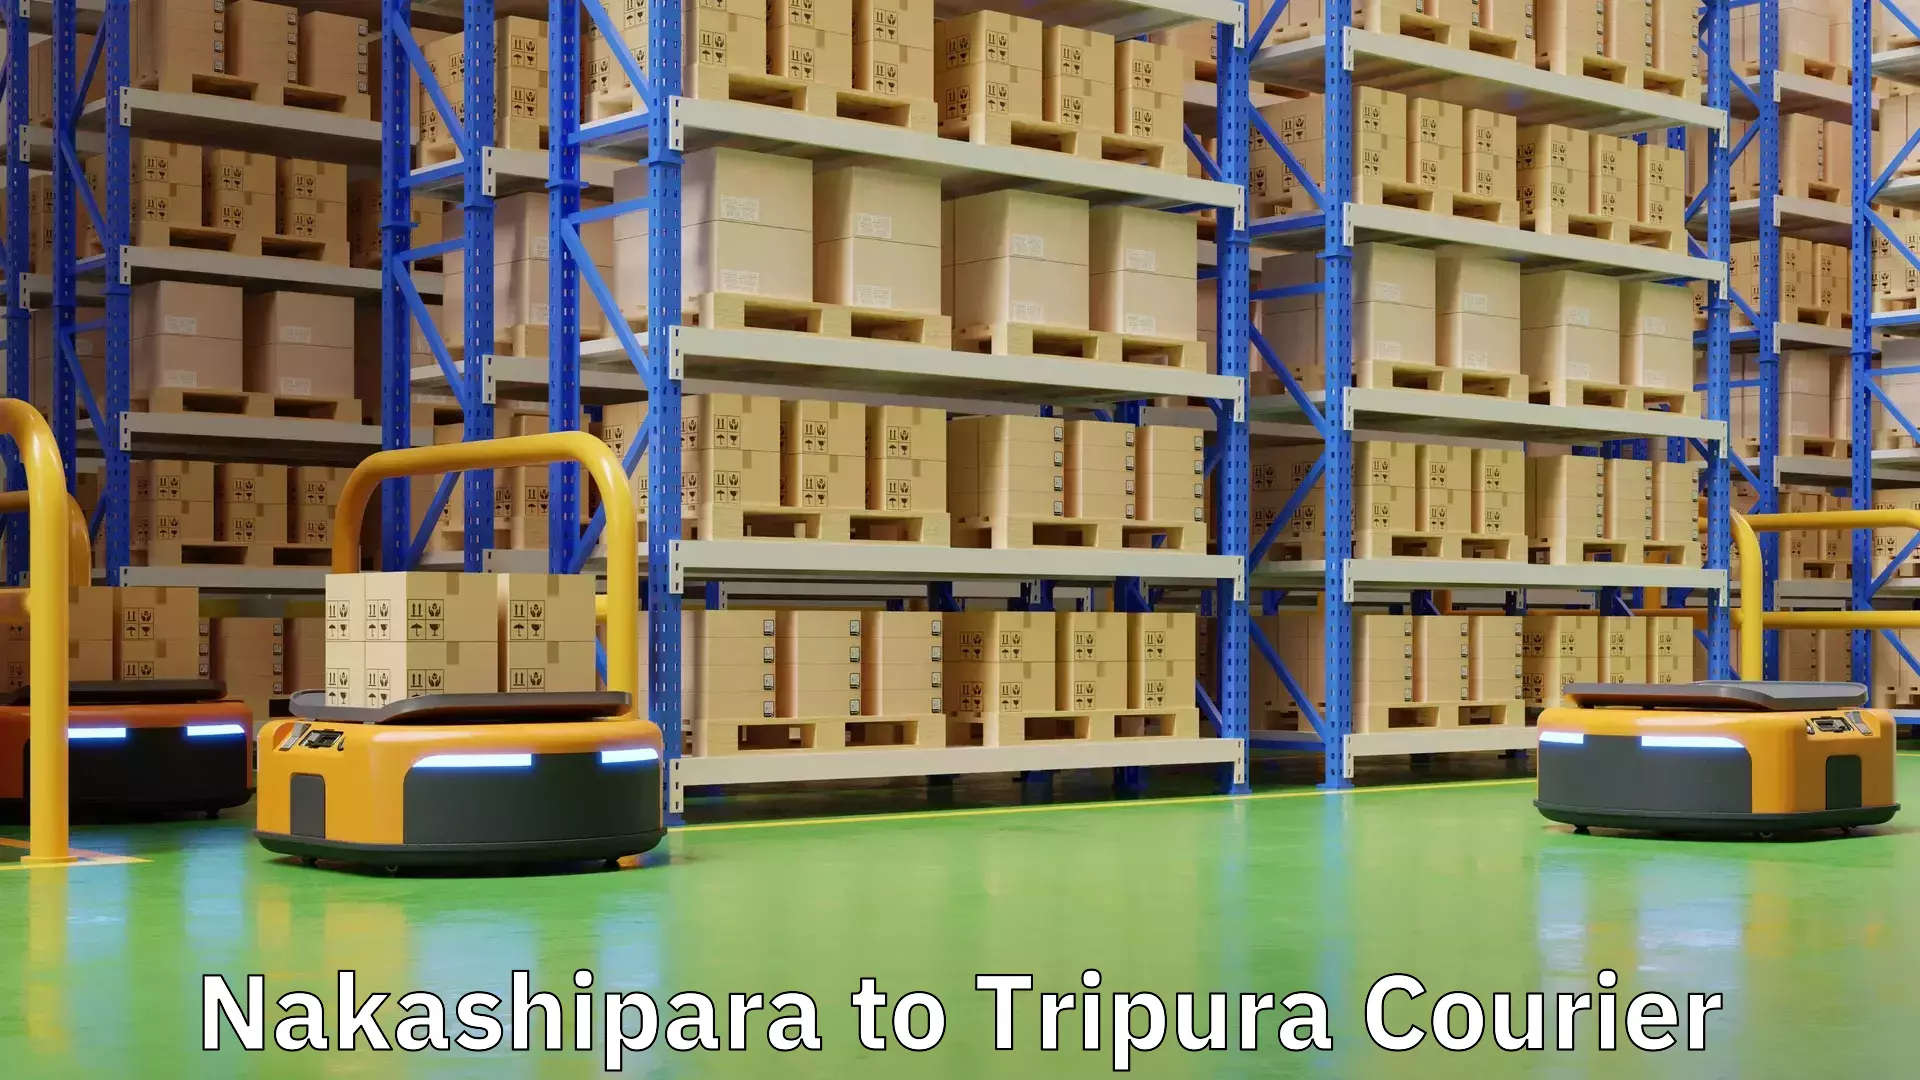 Nationwide shipping services Nakashipara to Tripura